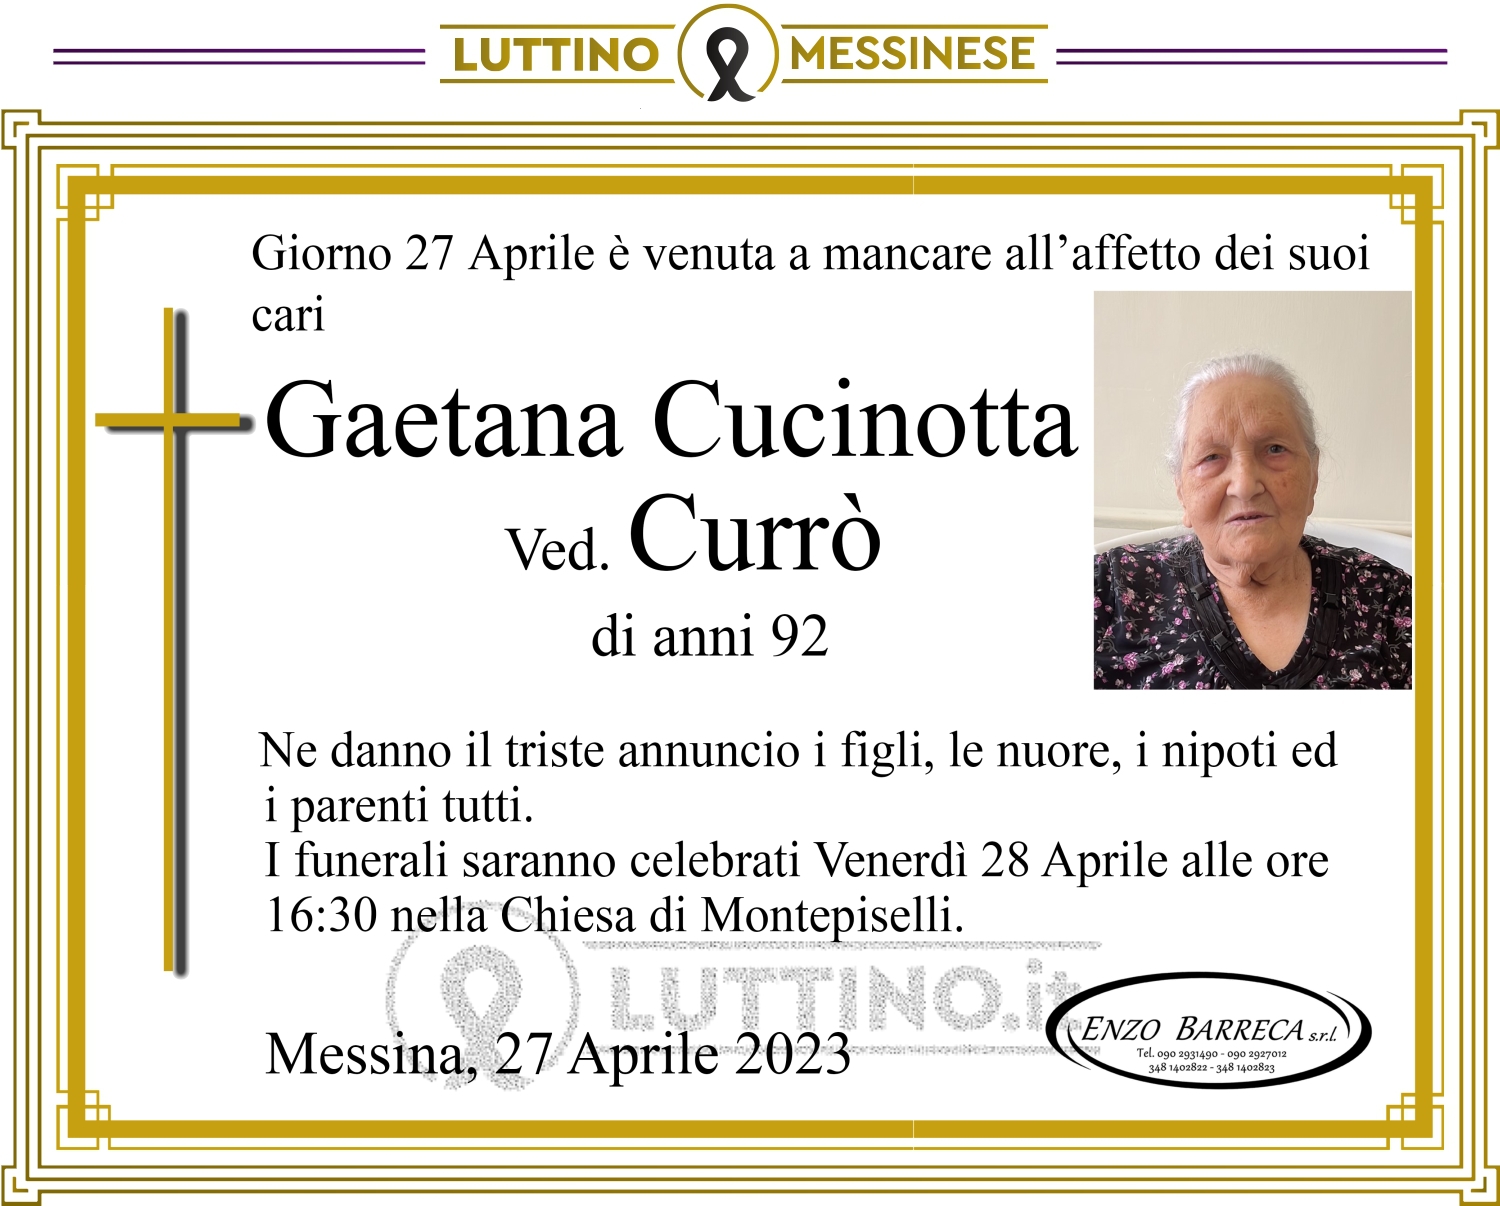 Gaetana Cucinotta